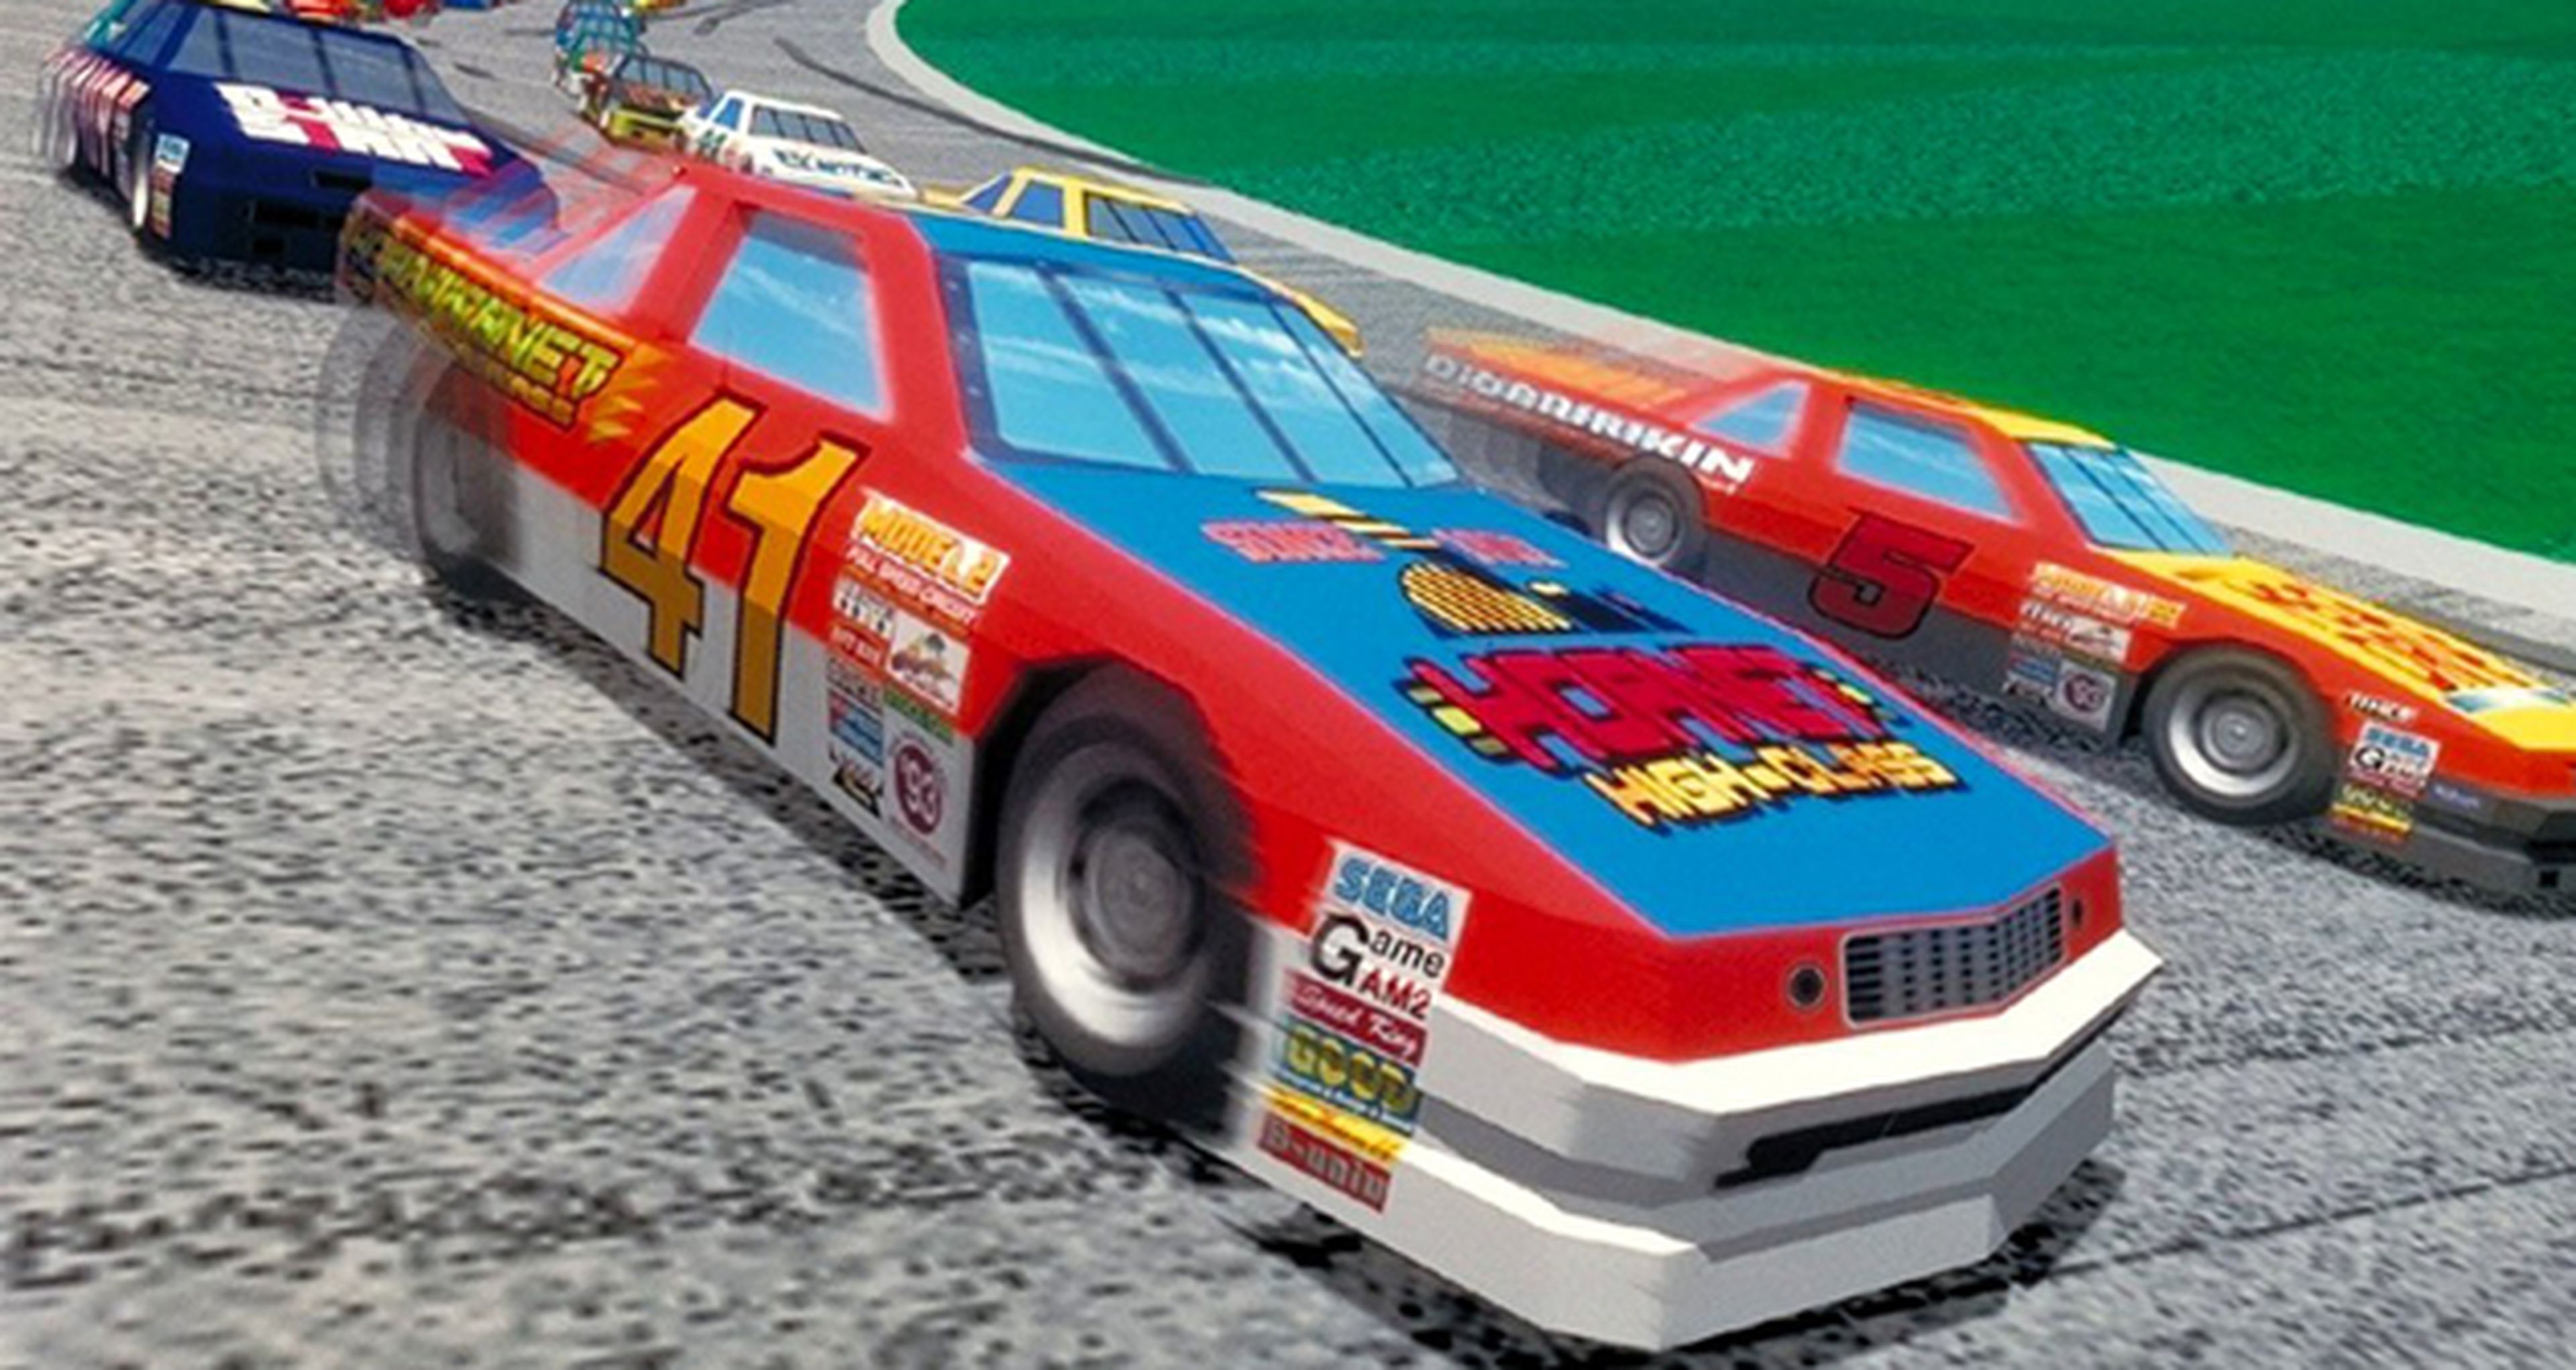 Hobby Consolas, hace 20 años: Daytona USA